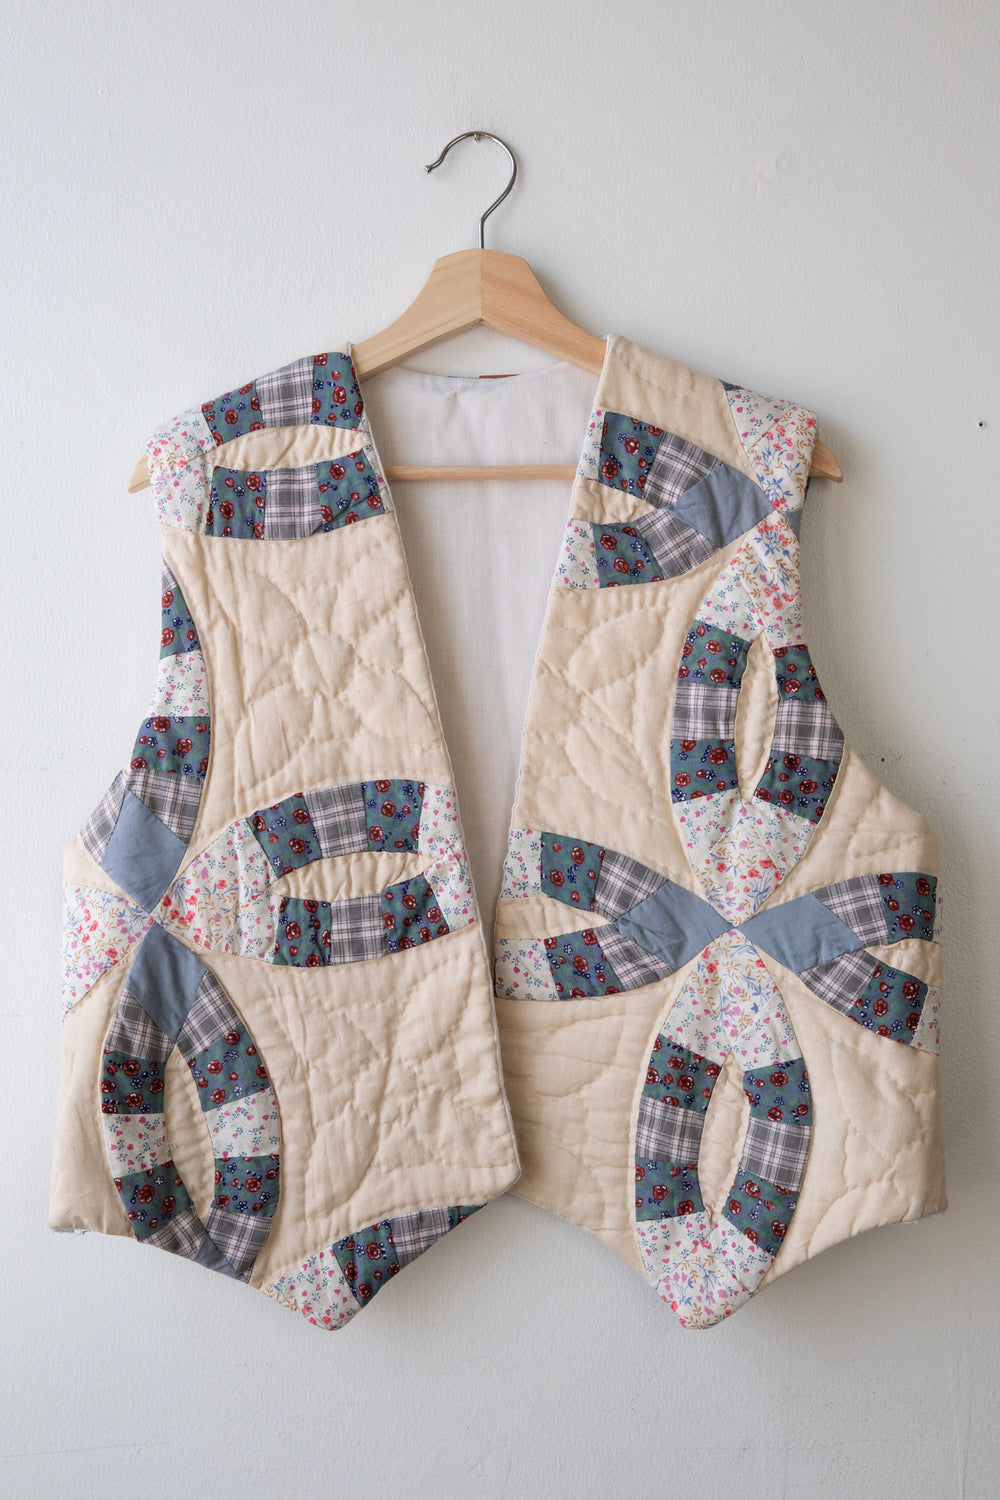 Vintage Handmade Quilt Vest